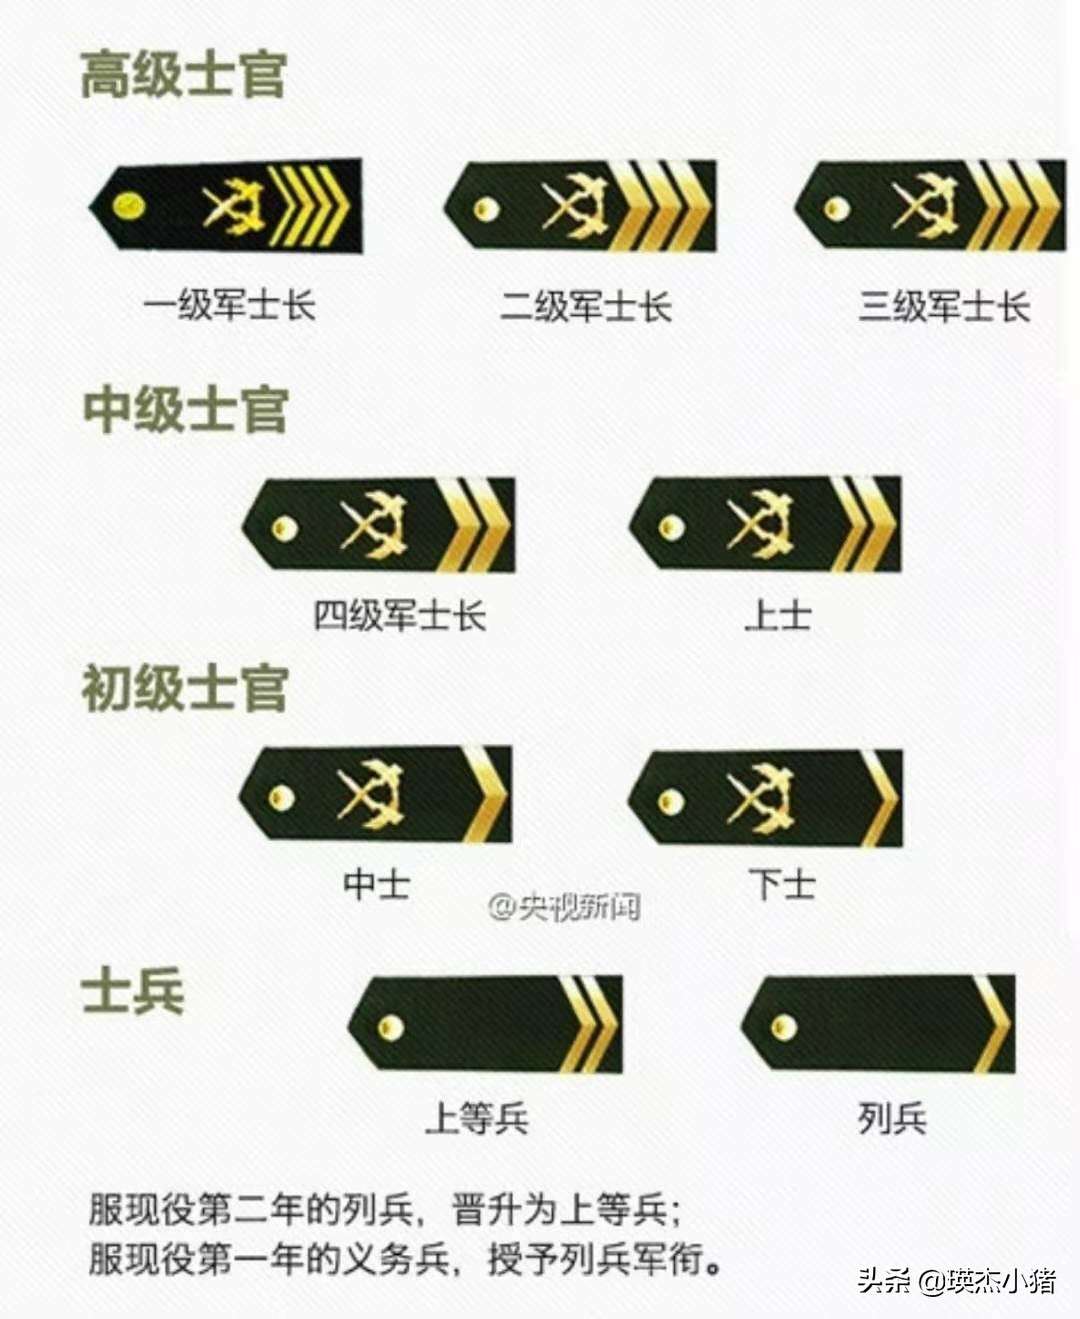 武装部军衔和肩章图片